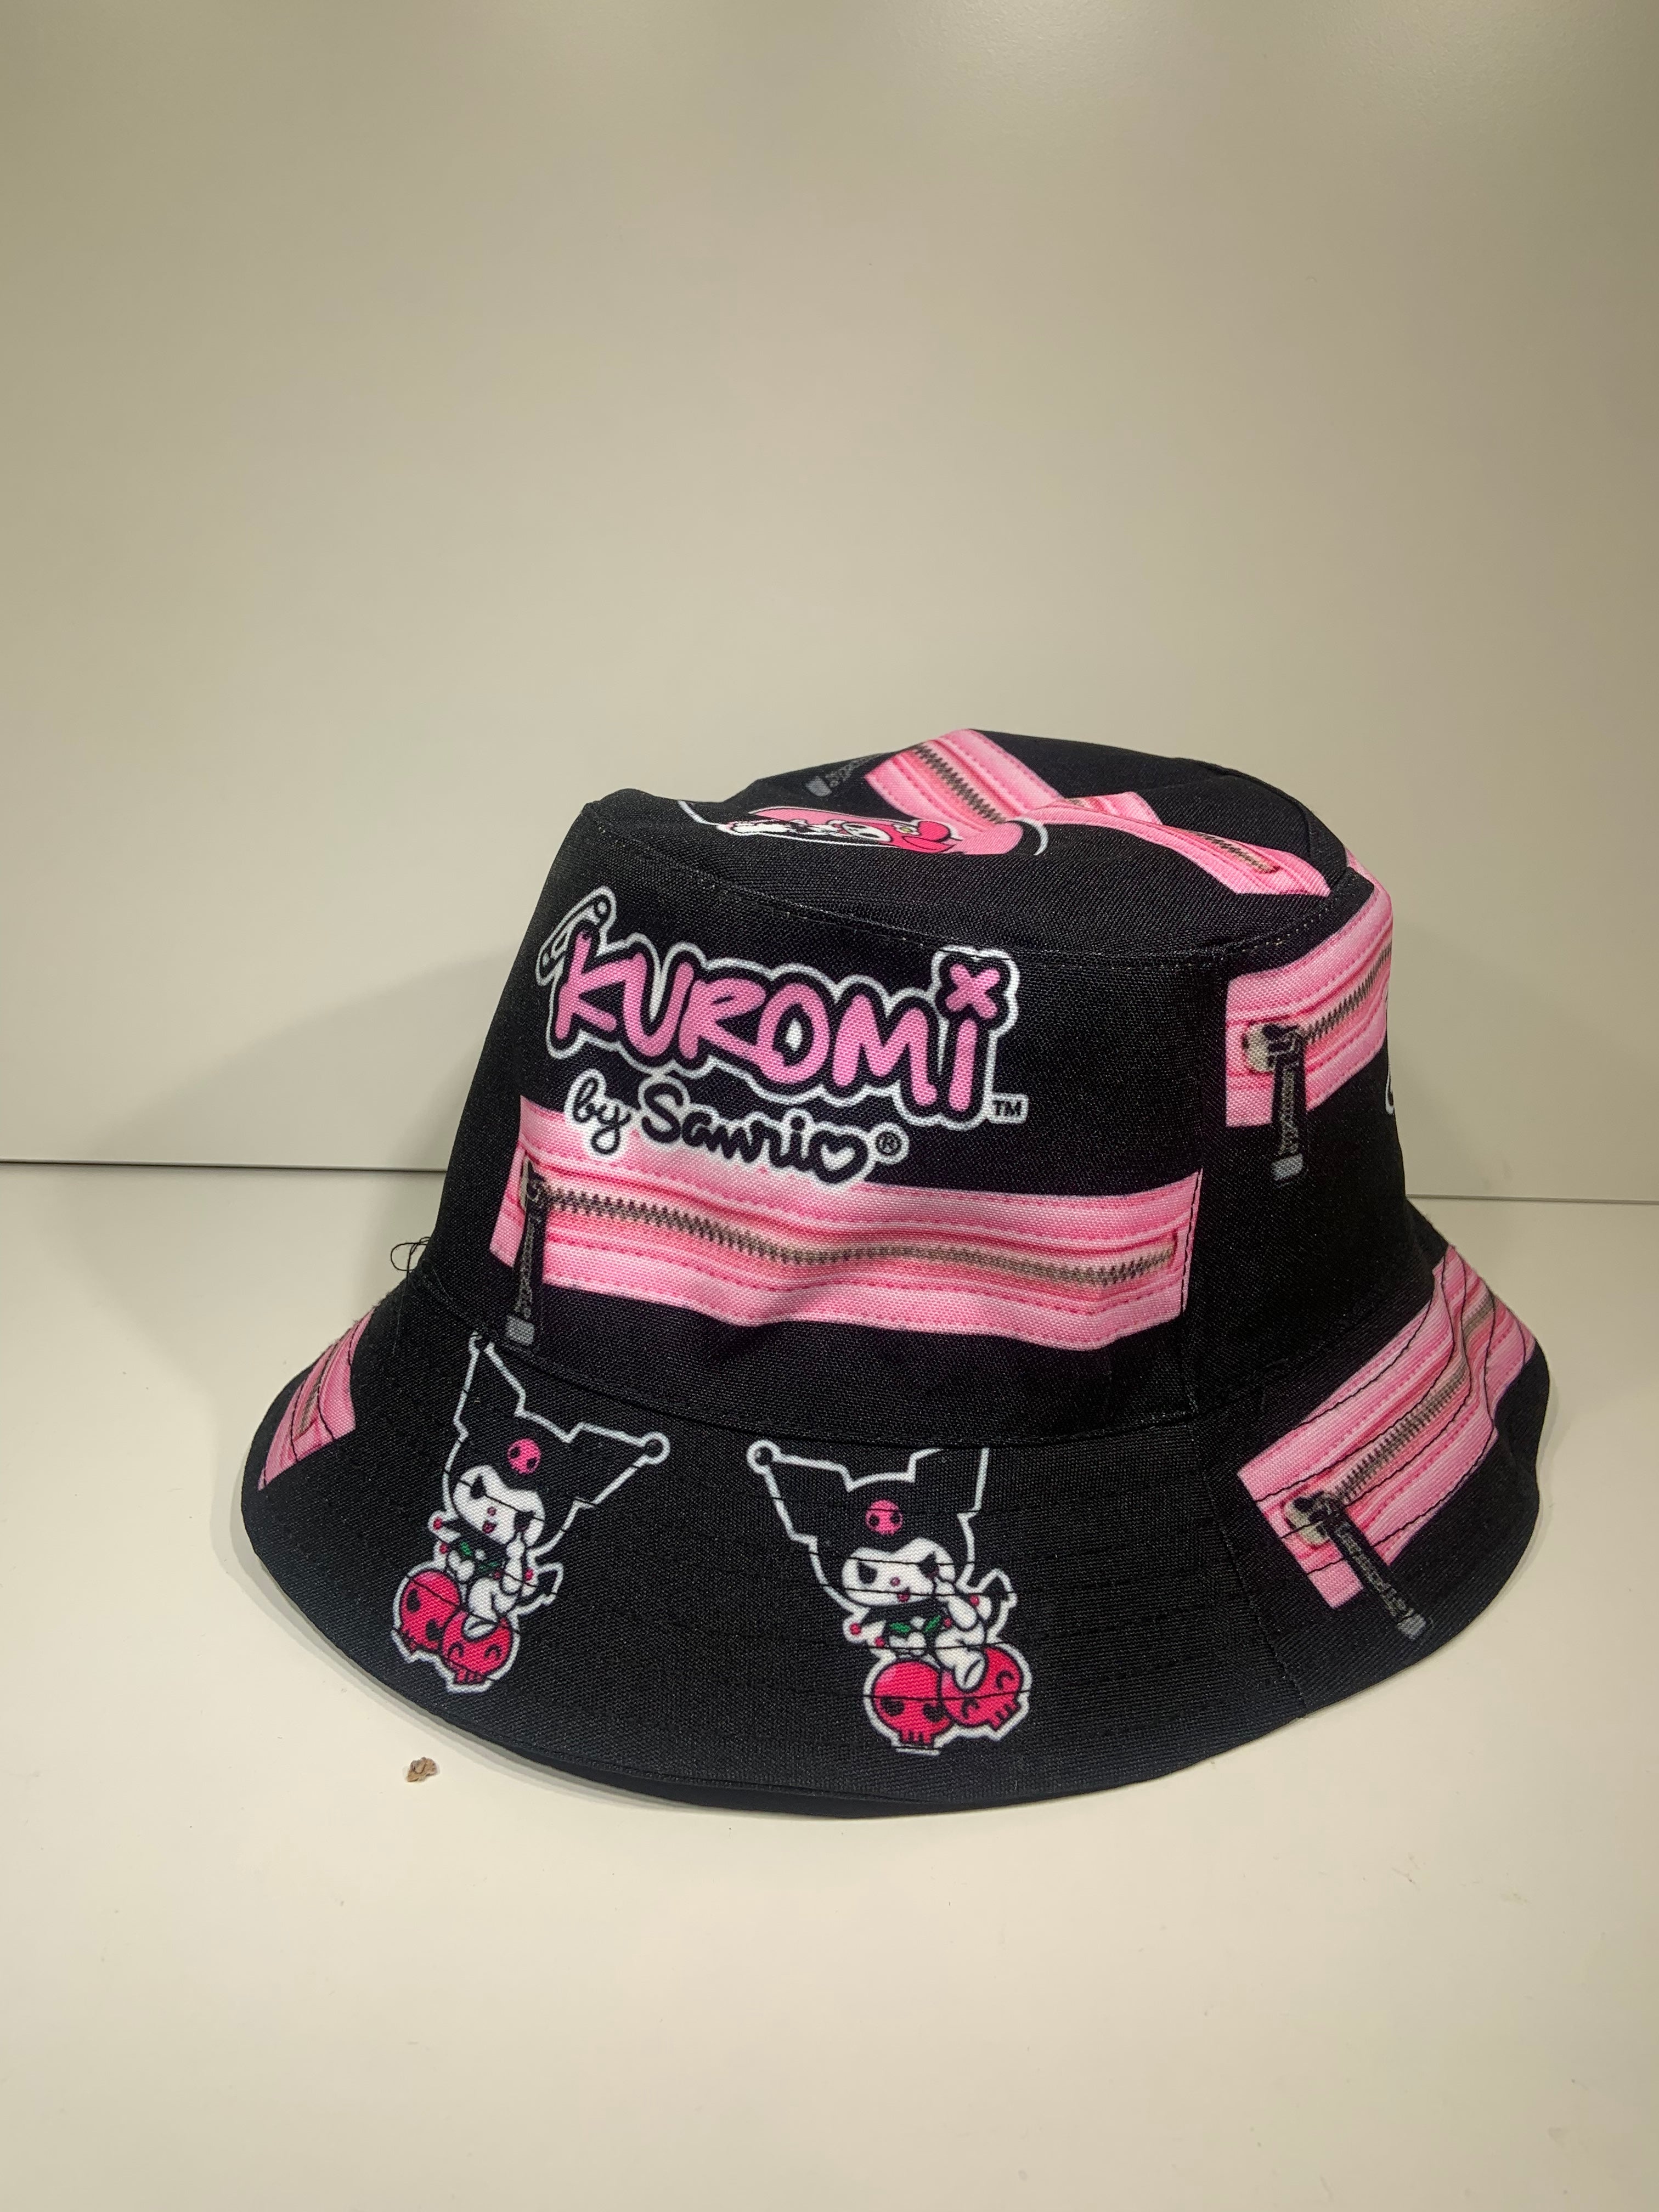 Bucket Hat - Sanrio Kuromi-hotRAGS.com